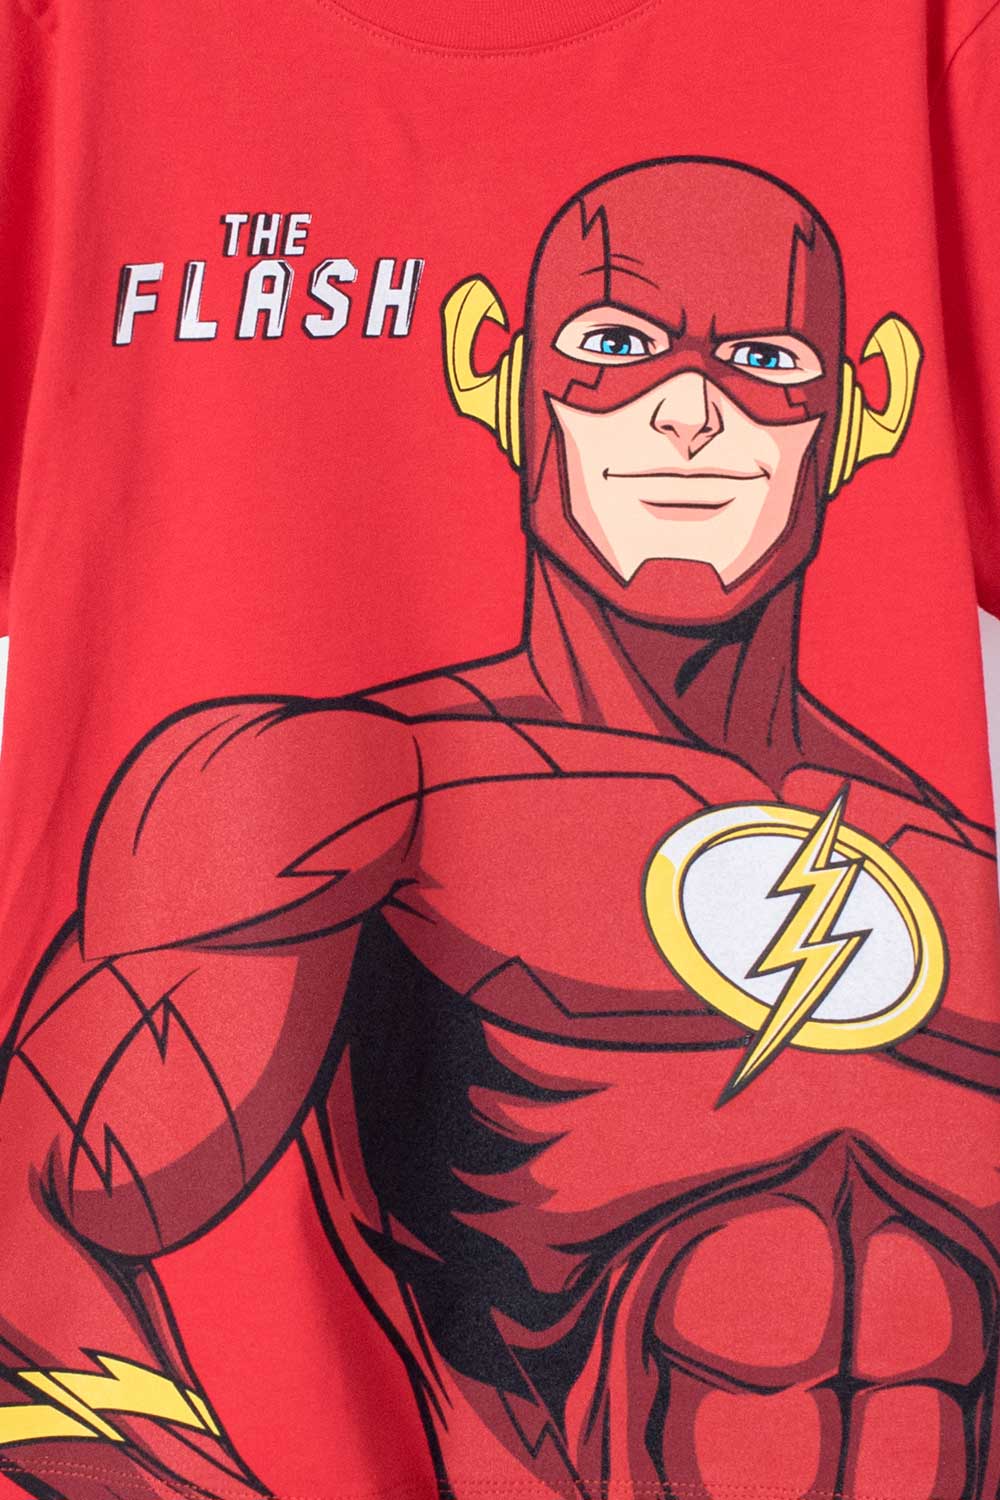 Camiseta de niño, manga corta roja de Flash Core - Tienda Online MIC